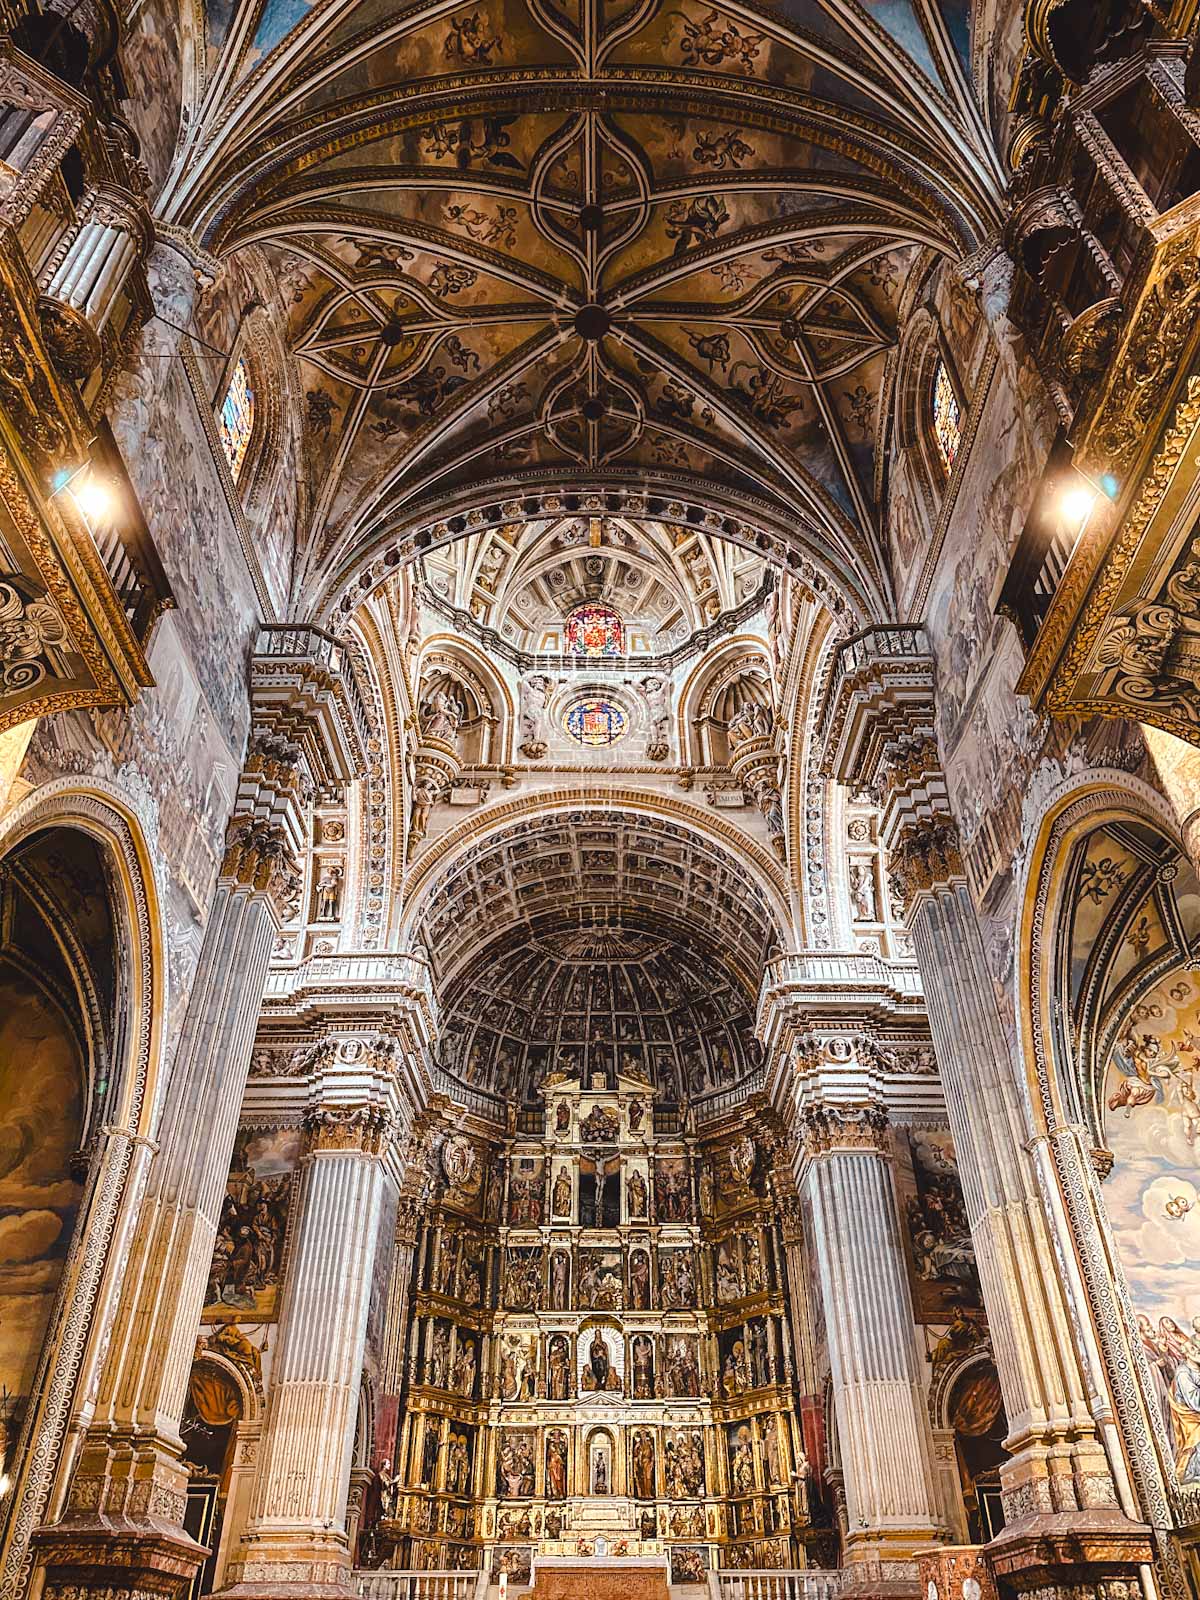 Hidden gems at Monasterio de San Jerónimo in Granada, Spain